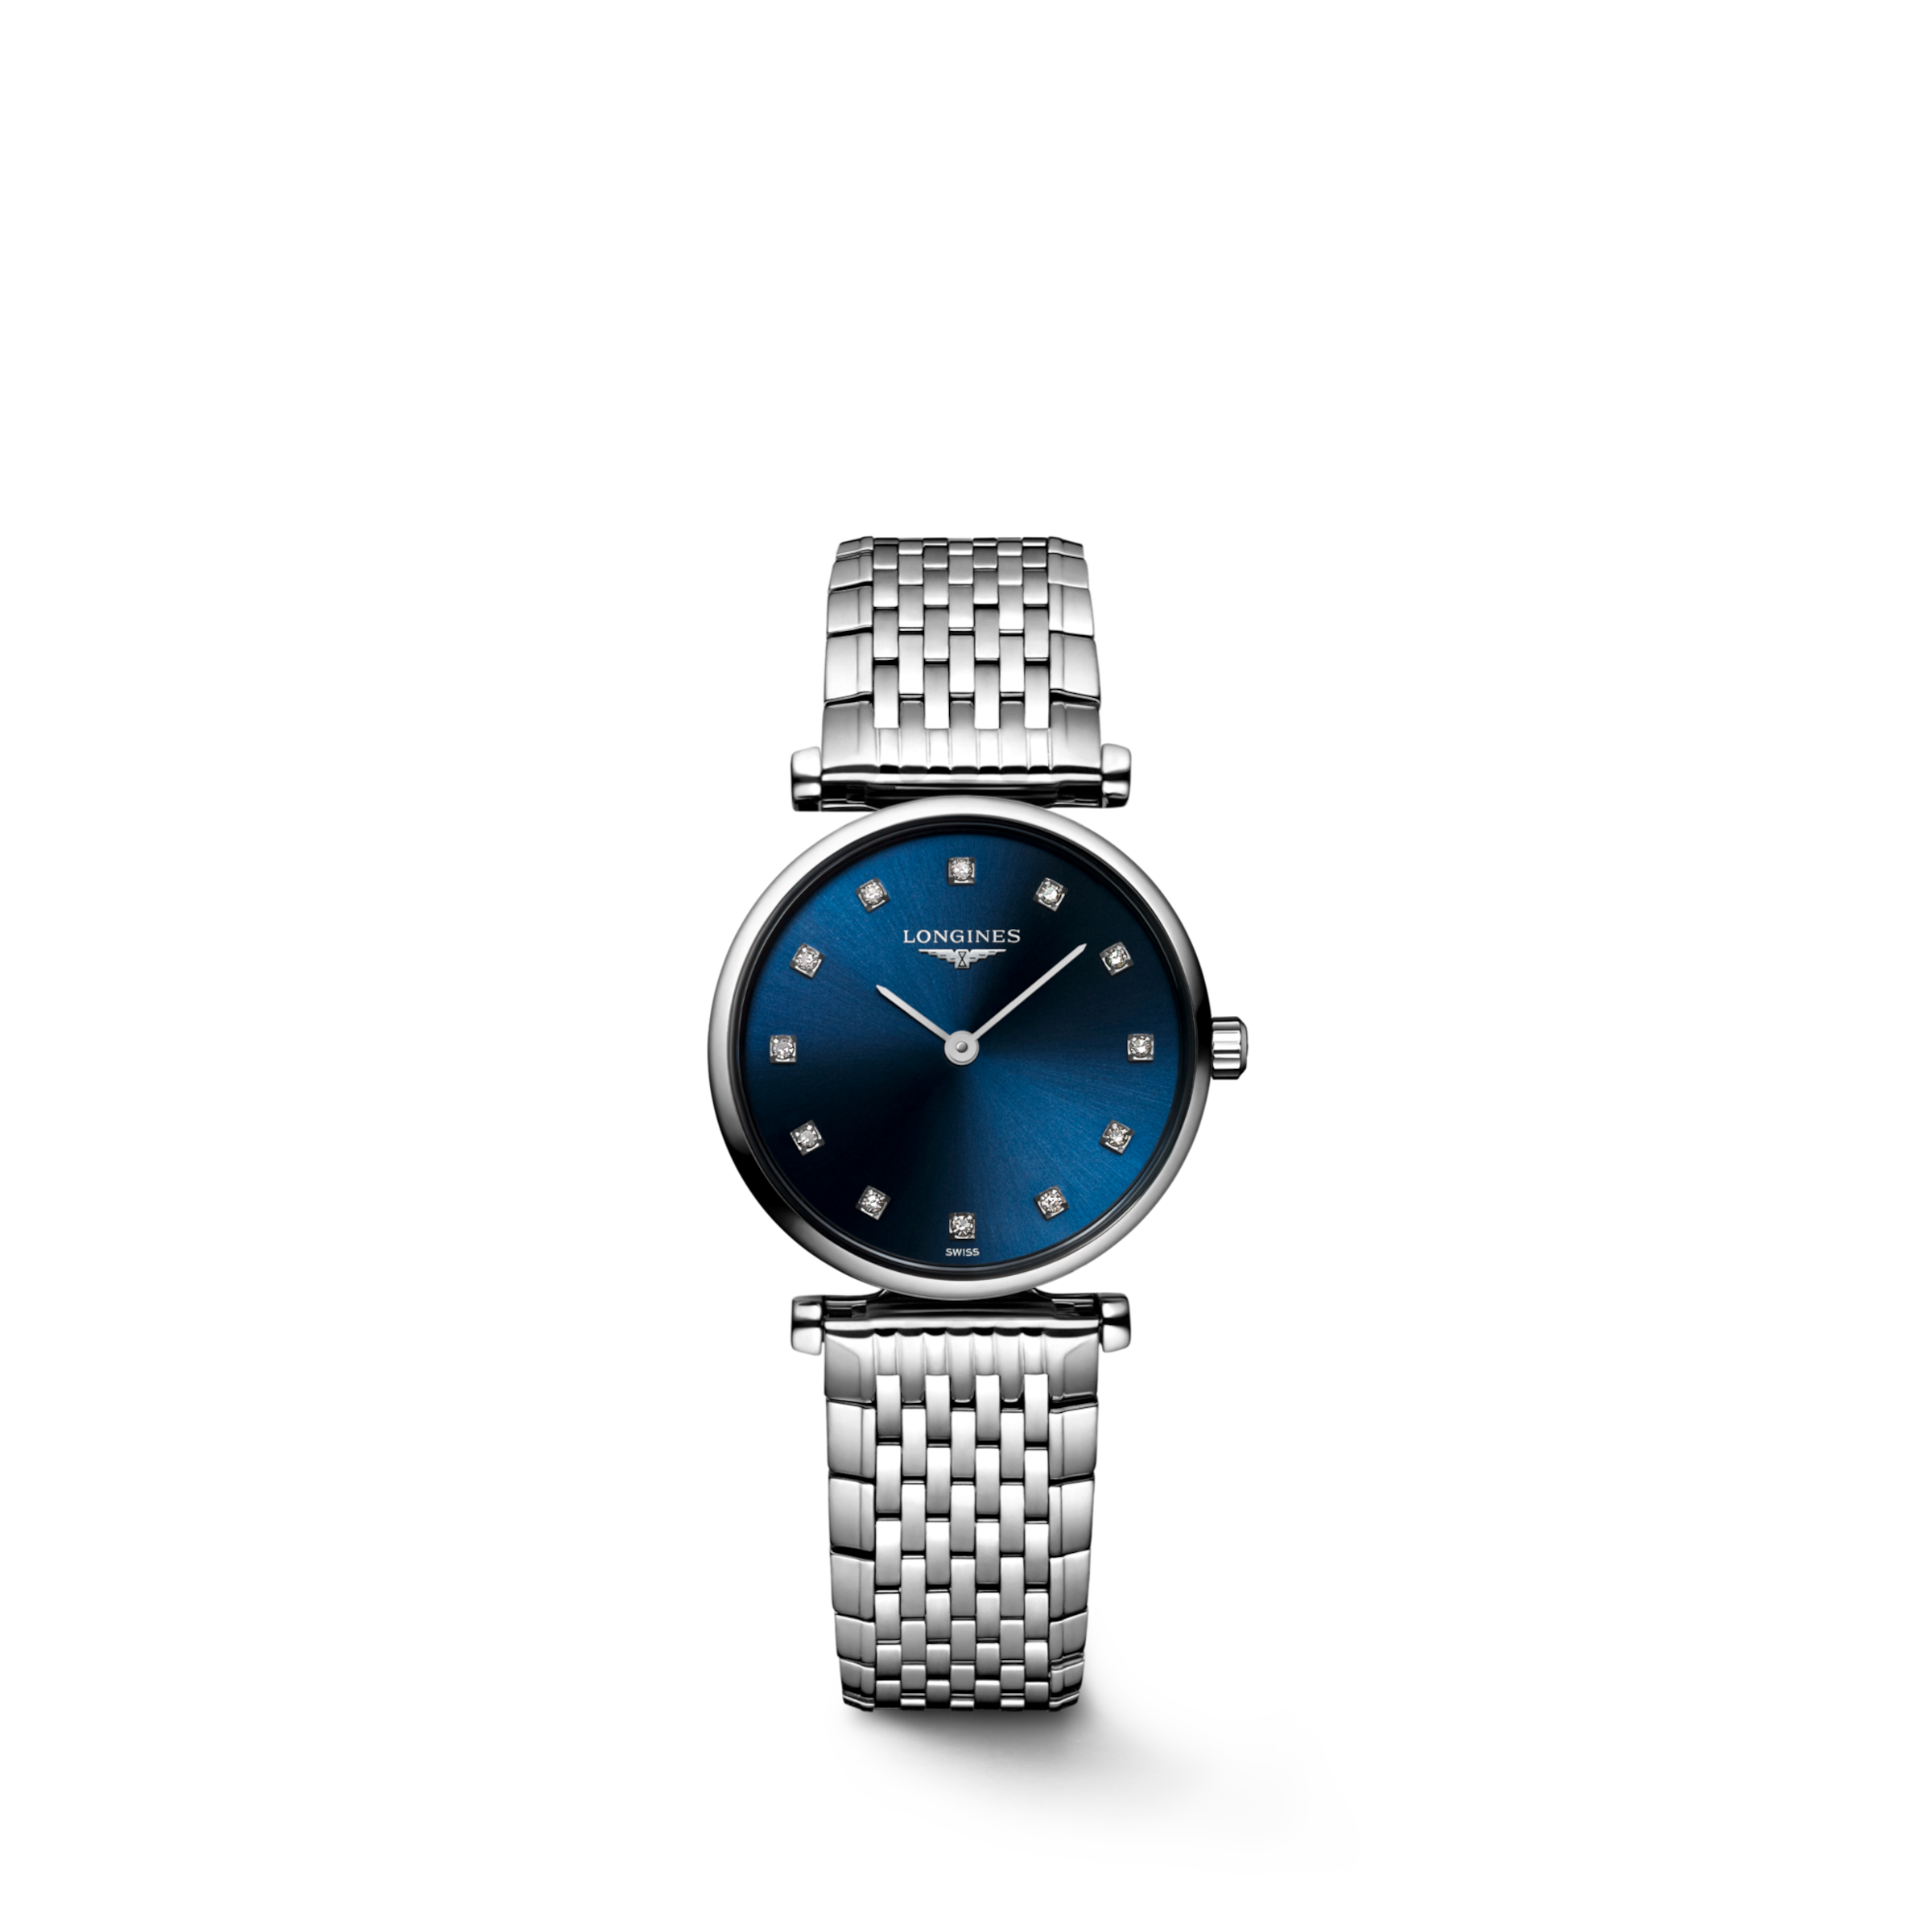 Longines LA GRANDE CLASSIQUE DE LONGINES Quartz Stainless steel Watch - L4.209.4.97.6